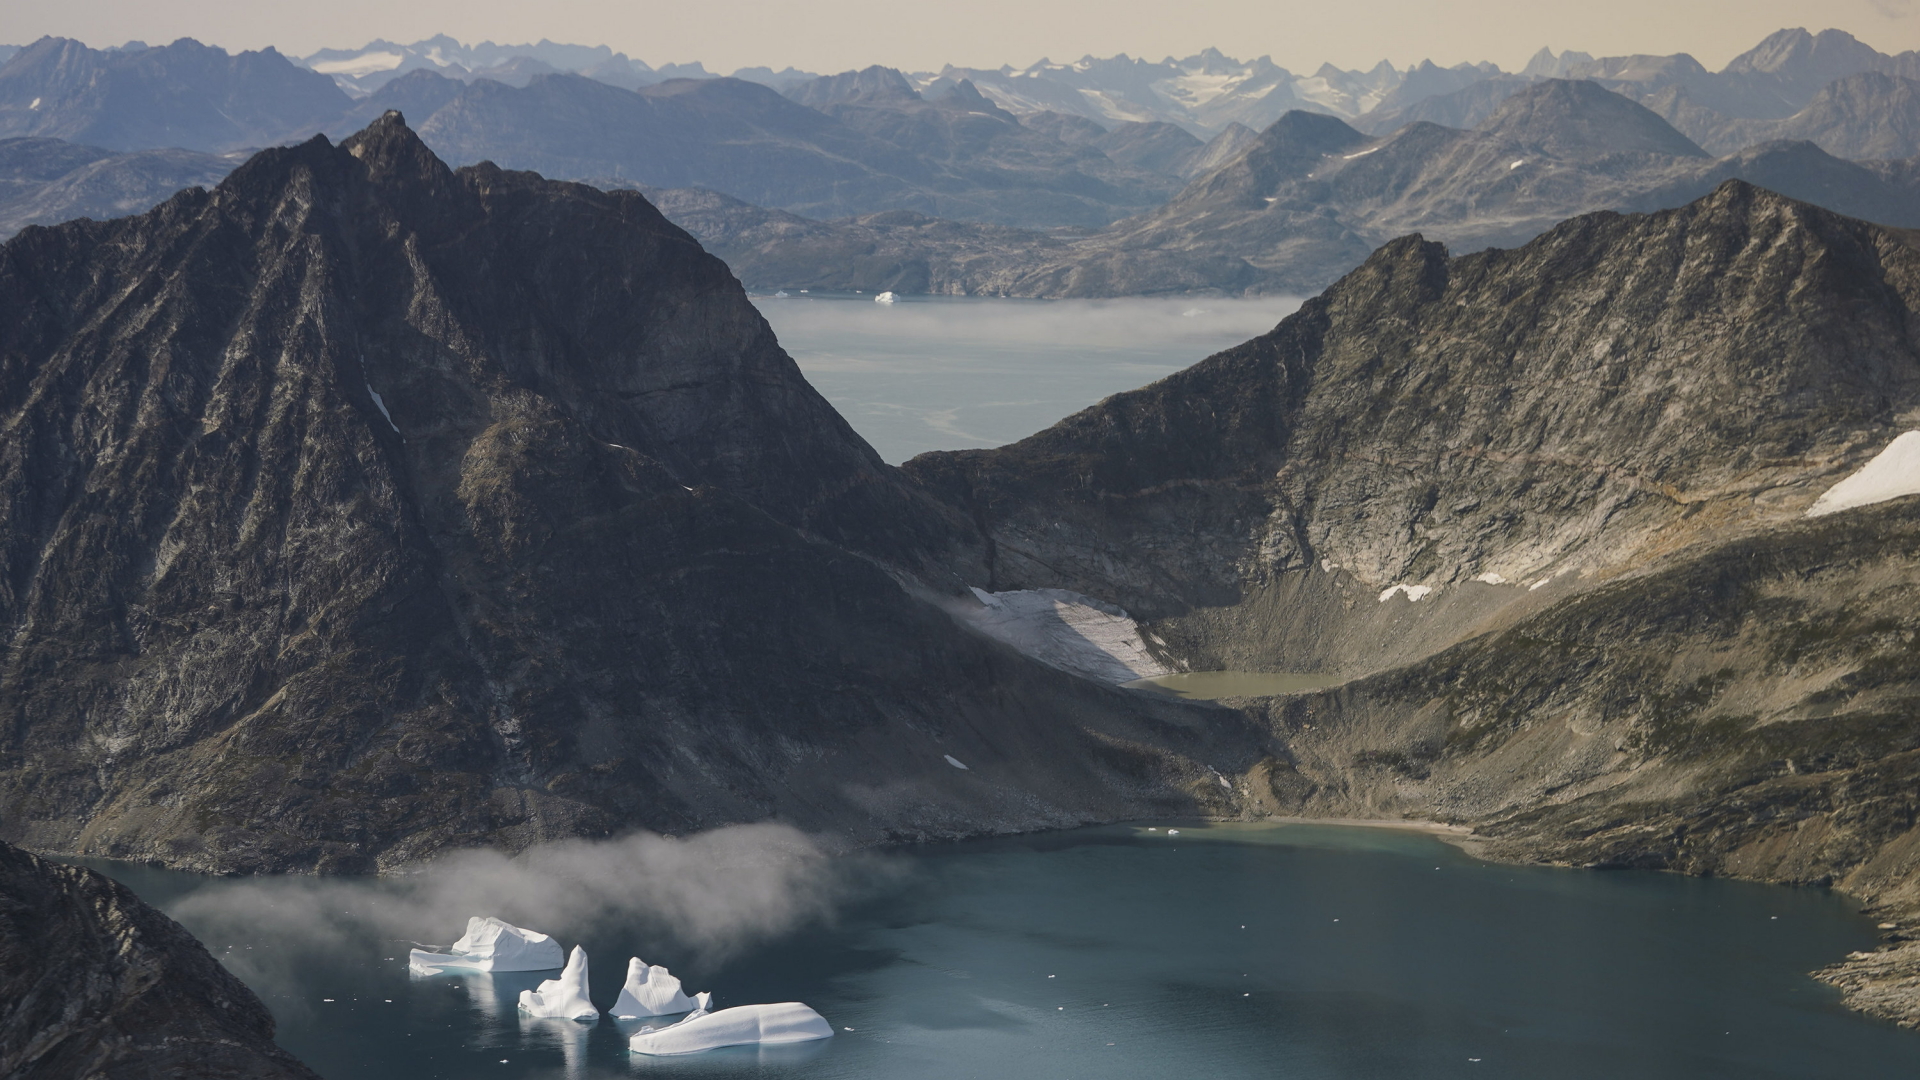  Eisberge treiben zwischen schneefreien Bergen nahe Kulusuk bei Grönland auf dem Wasser. | dpa